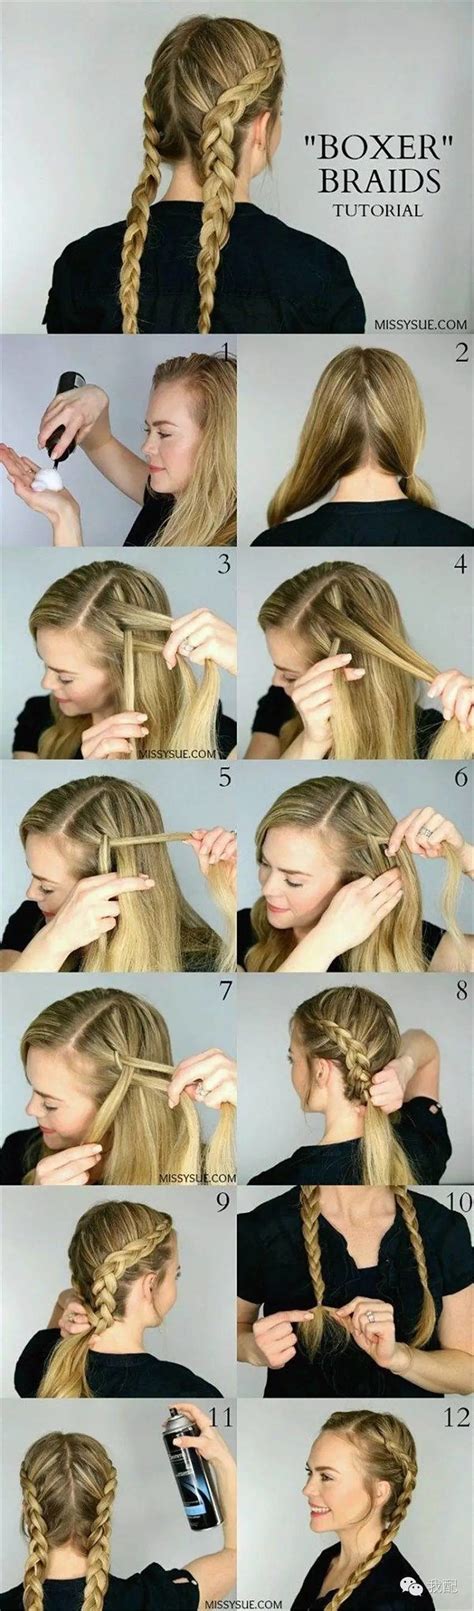 7 easy and creative dutch braid hair tutorials